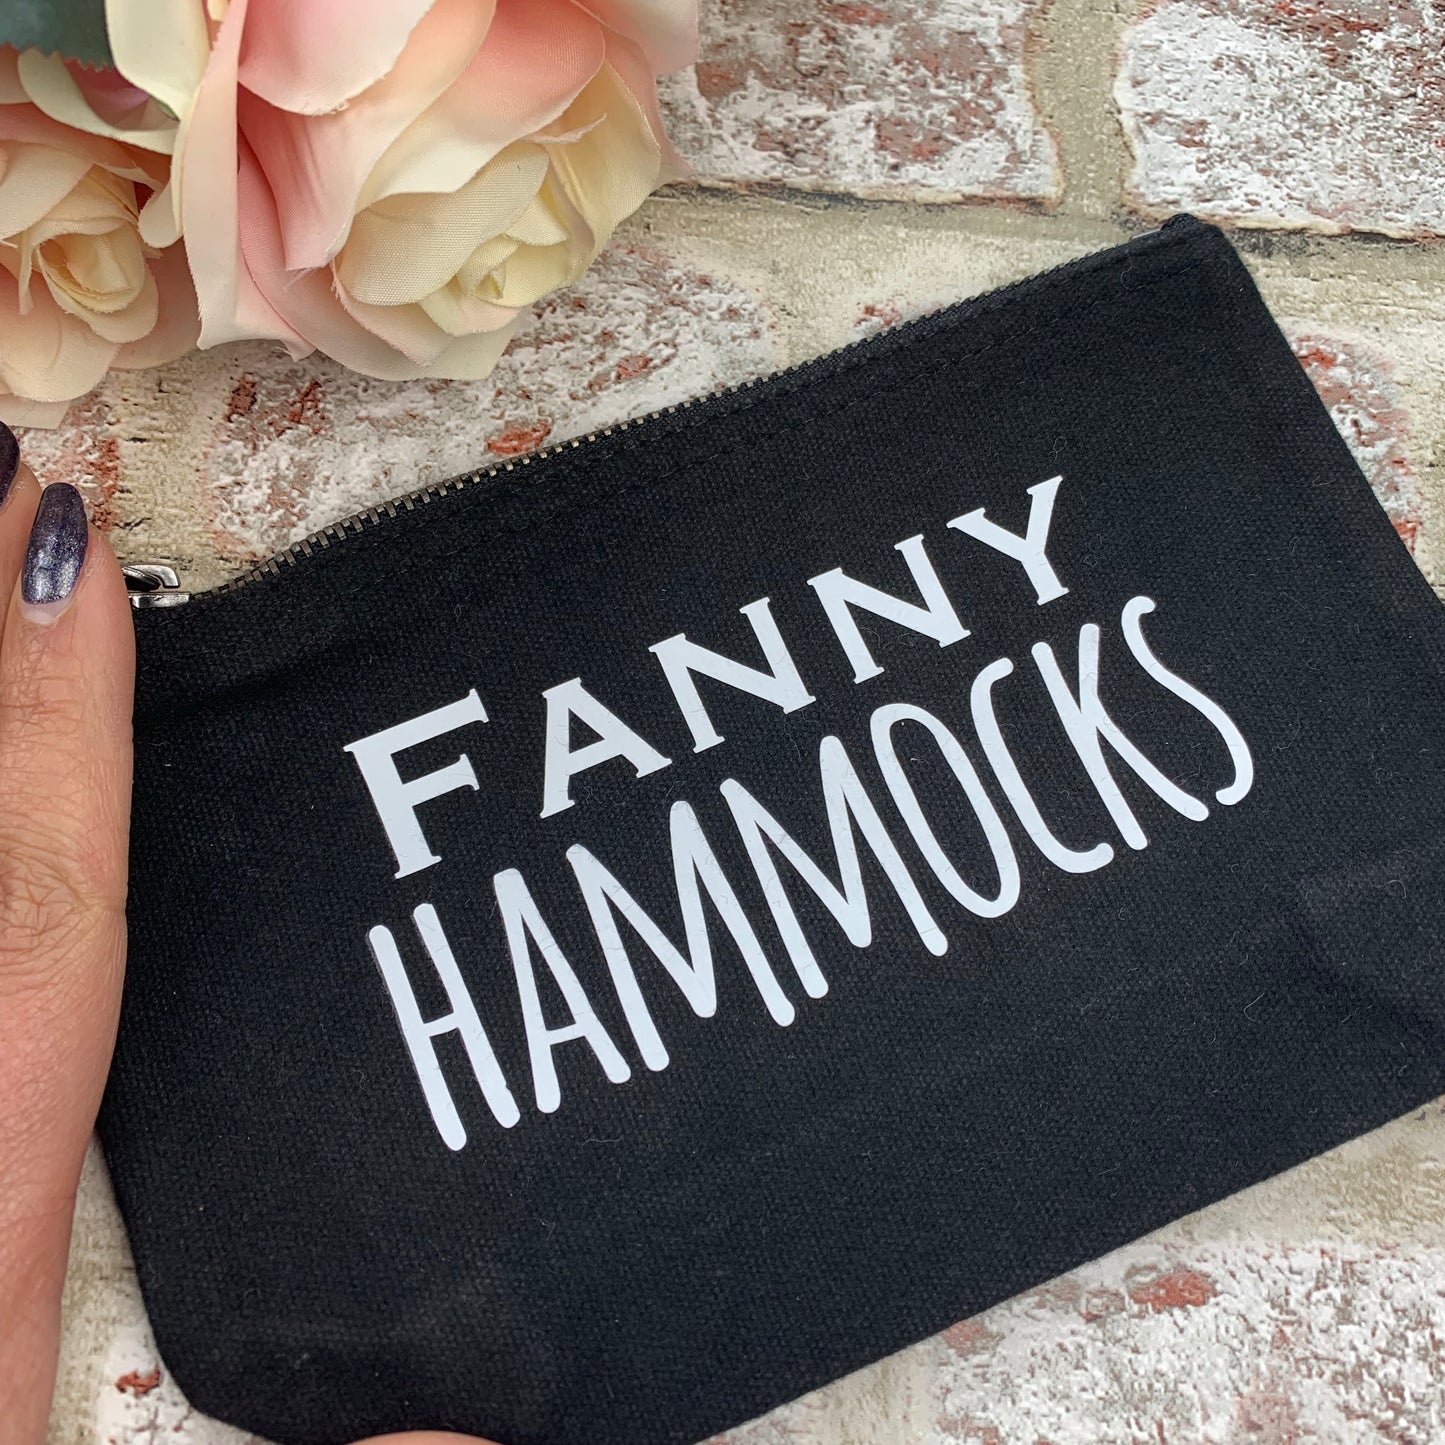 Fanny Hammock - Tampon, pad, sanitary bag / Period Bag